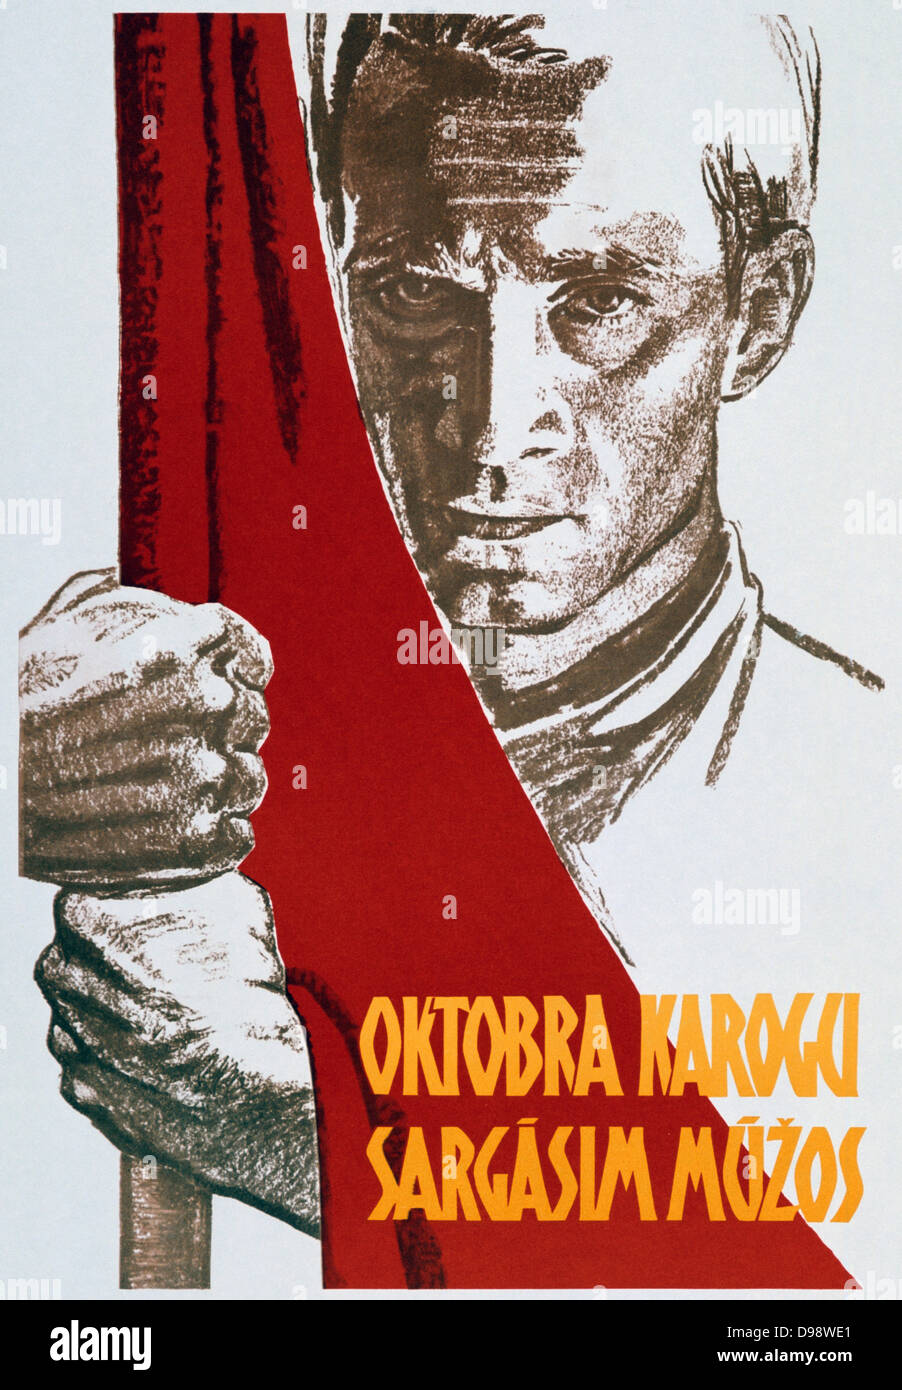 Noi portiamo la bandiera di ottobre attraverso i secoli". Propaganda sovietica poster, 1963. Revolutiion 1919 Russia Sovietica Unione Sovietica comunista comunismo Foto Stock